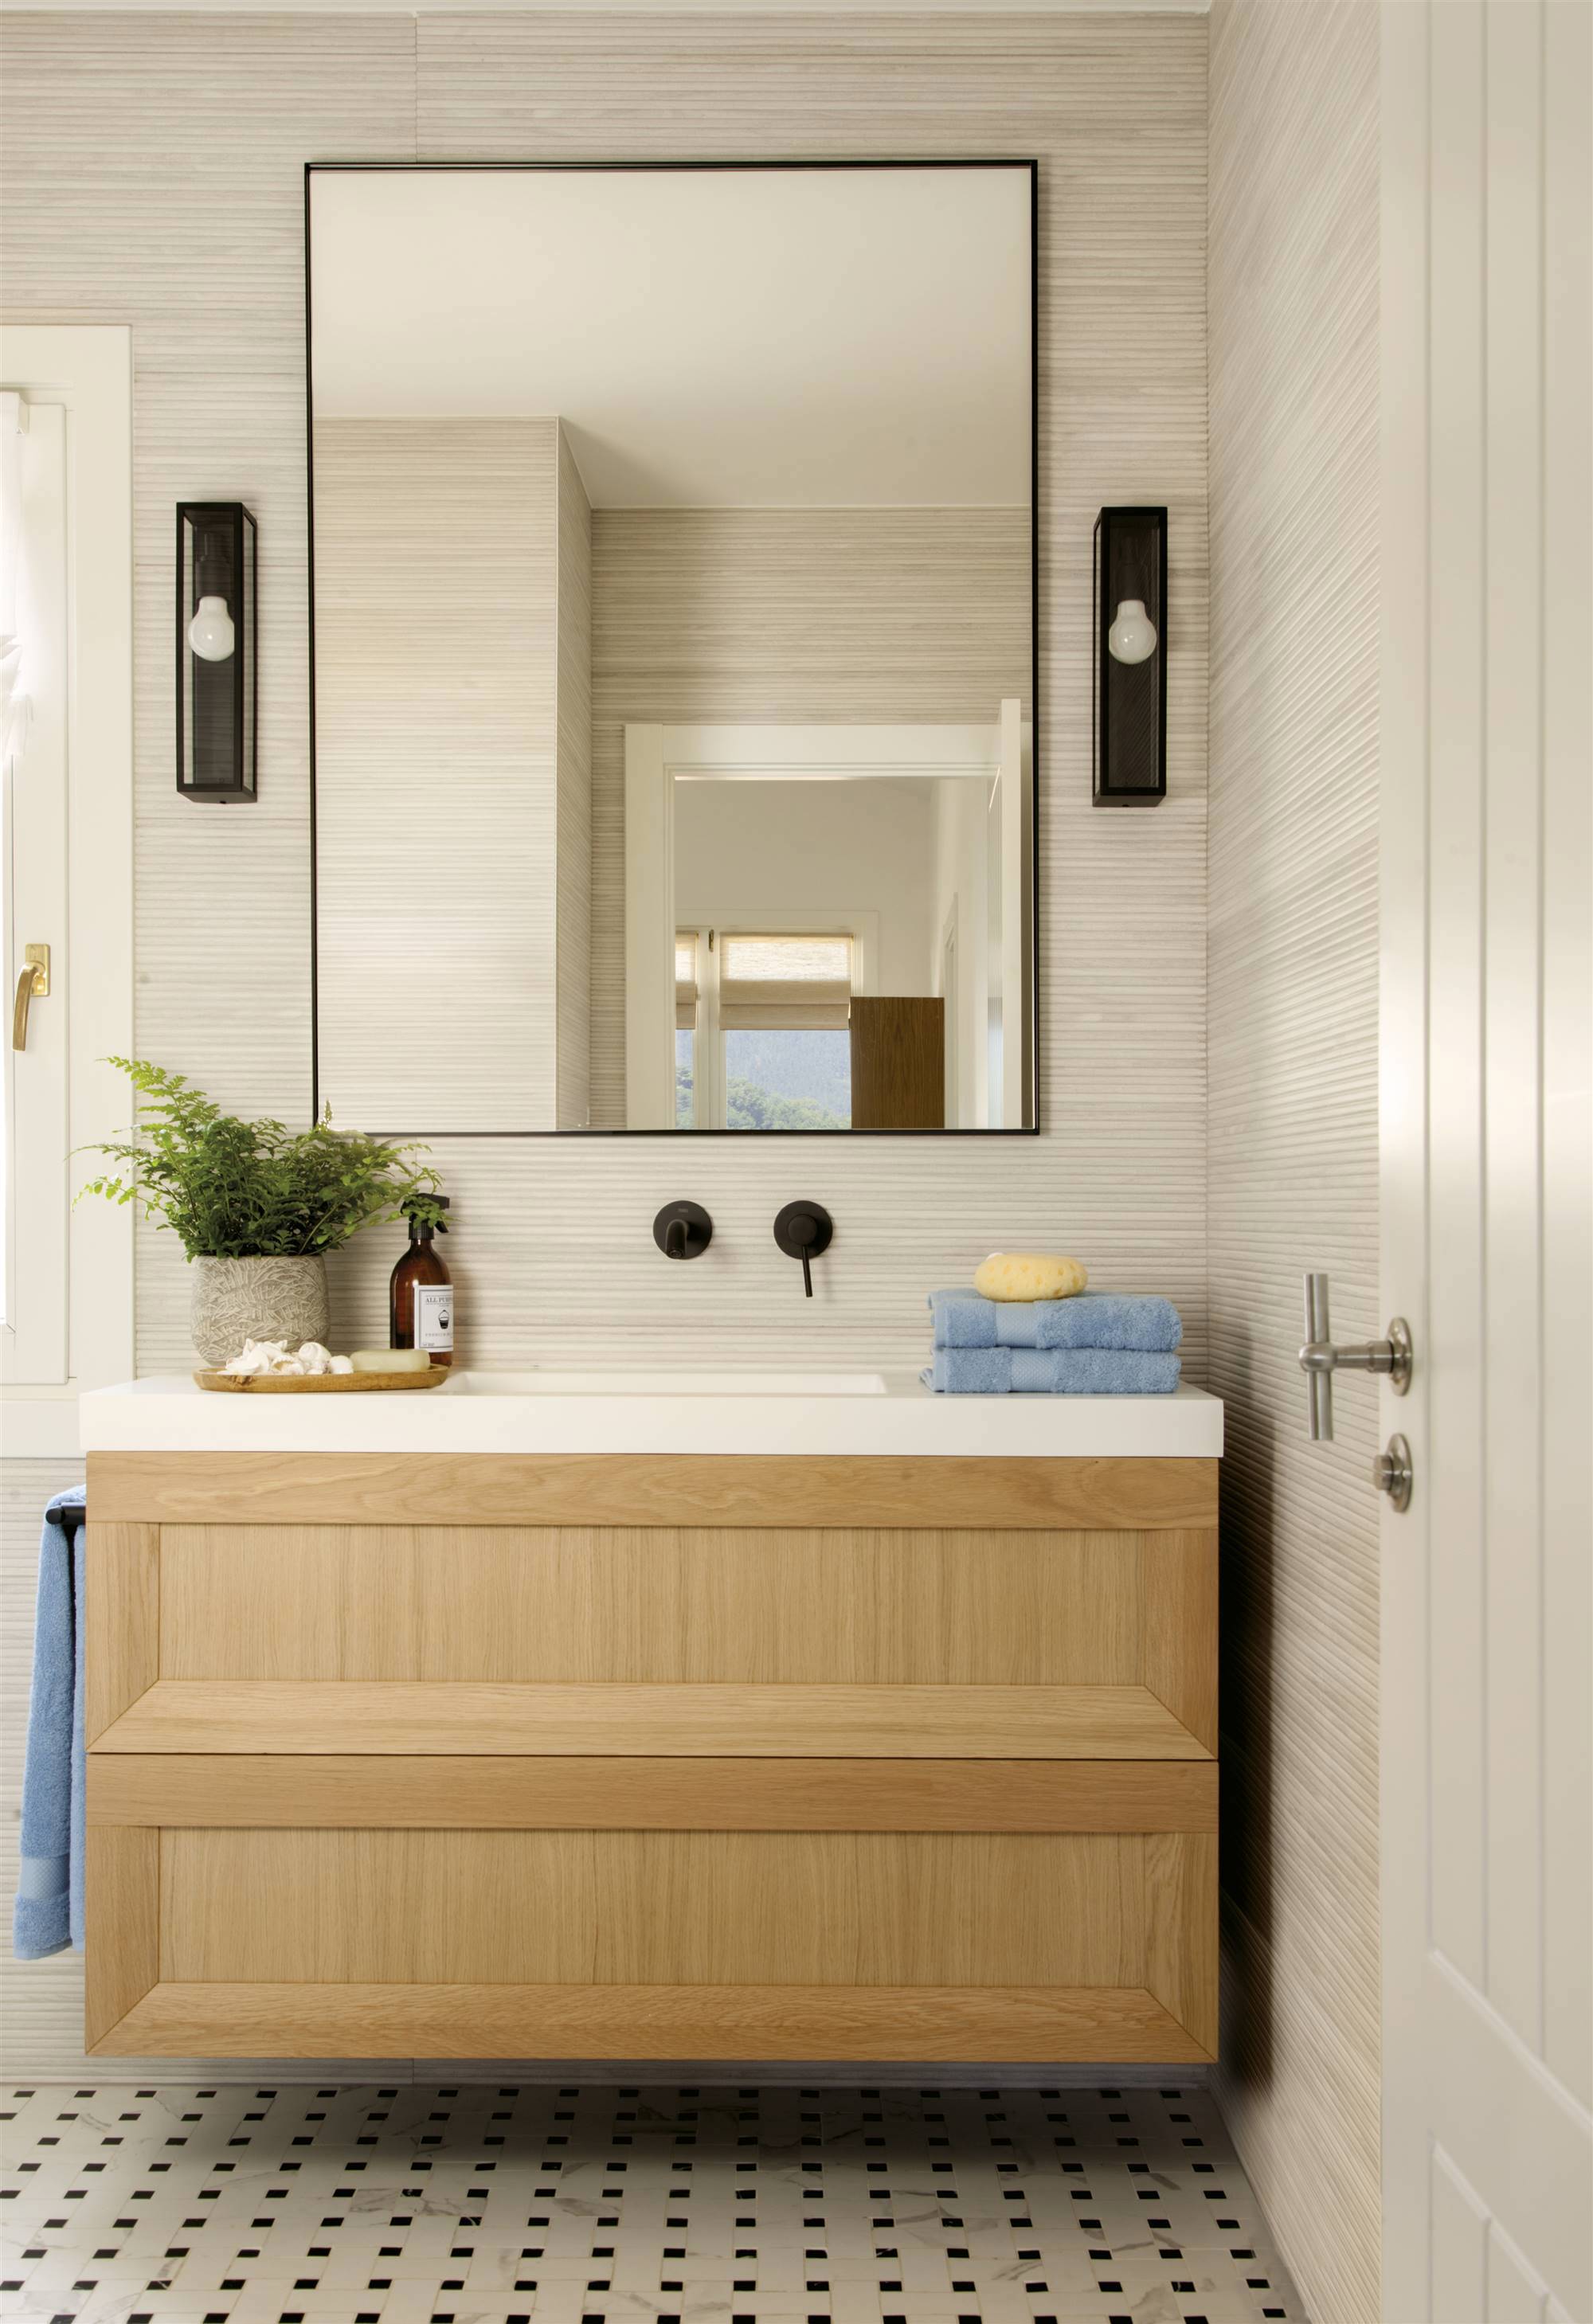 Baño con mueble de madera y espejo rectangular